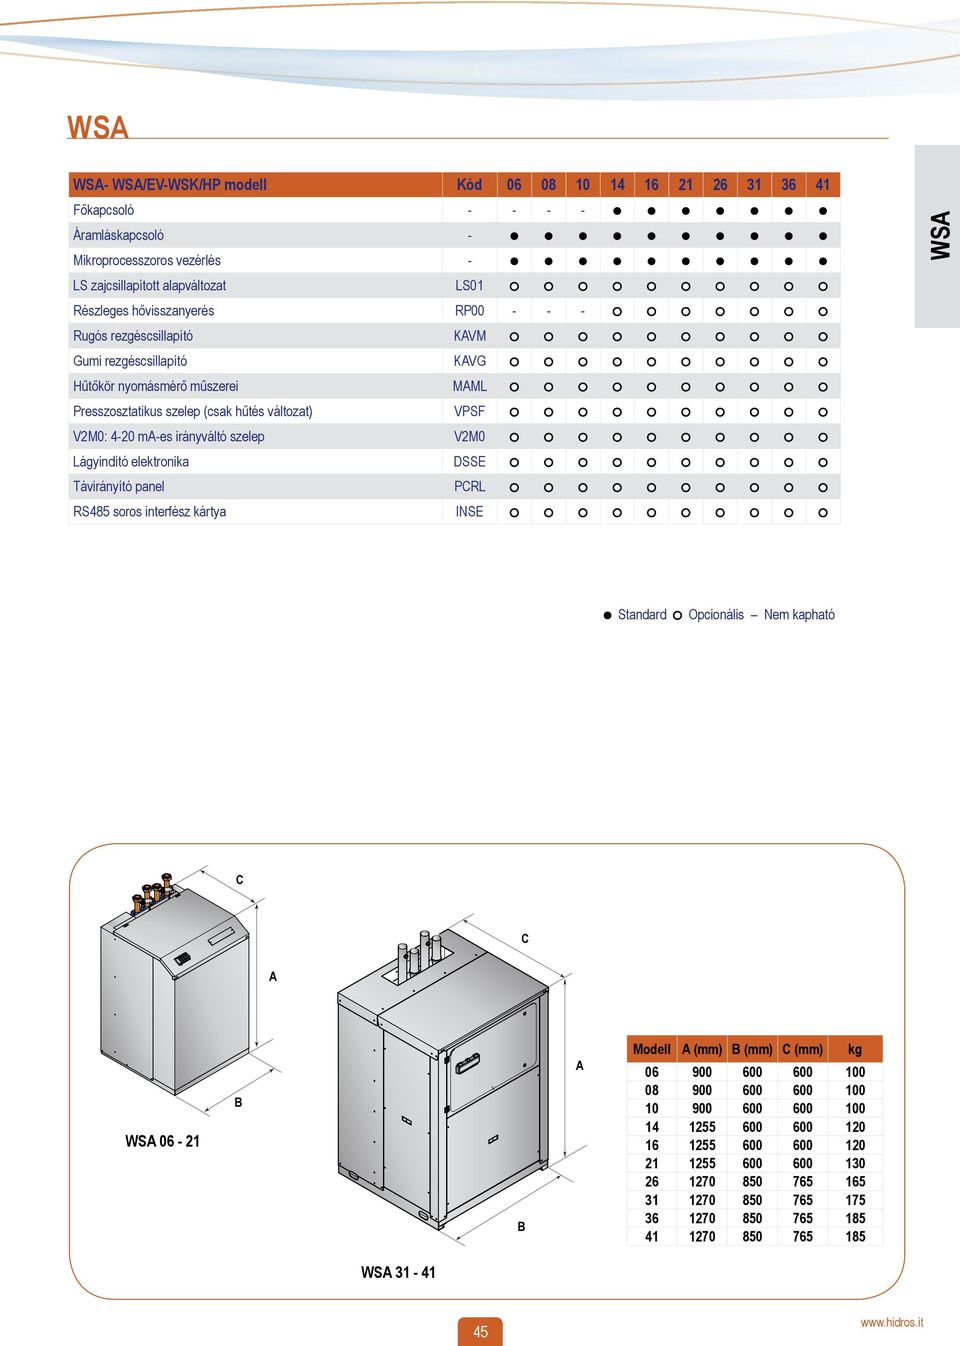 Lágyindító elektronika DSSE Távirányító panel PCRL RS485 soros interfész kártya INSE WS Standard Opcionális Nem kapható C C WS 06-21 B B Modell (mm) B (mm) C (mm) kg 06 900 600 600 100 08